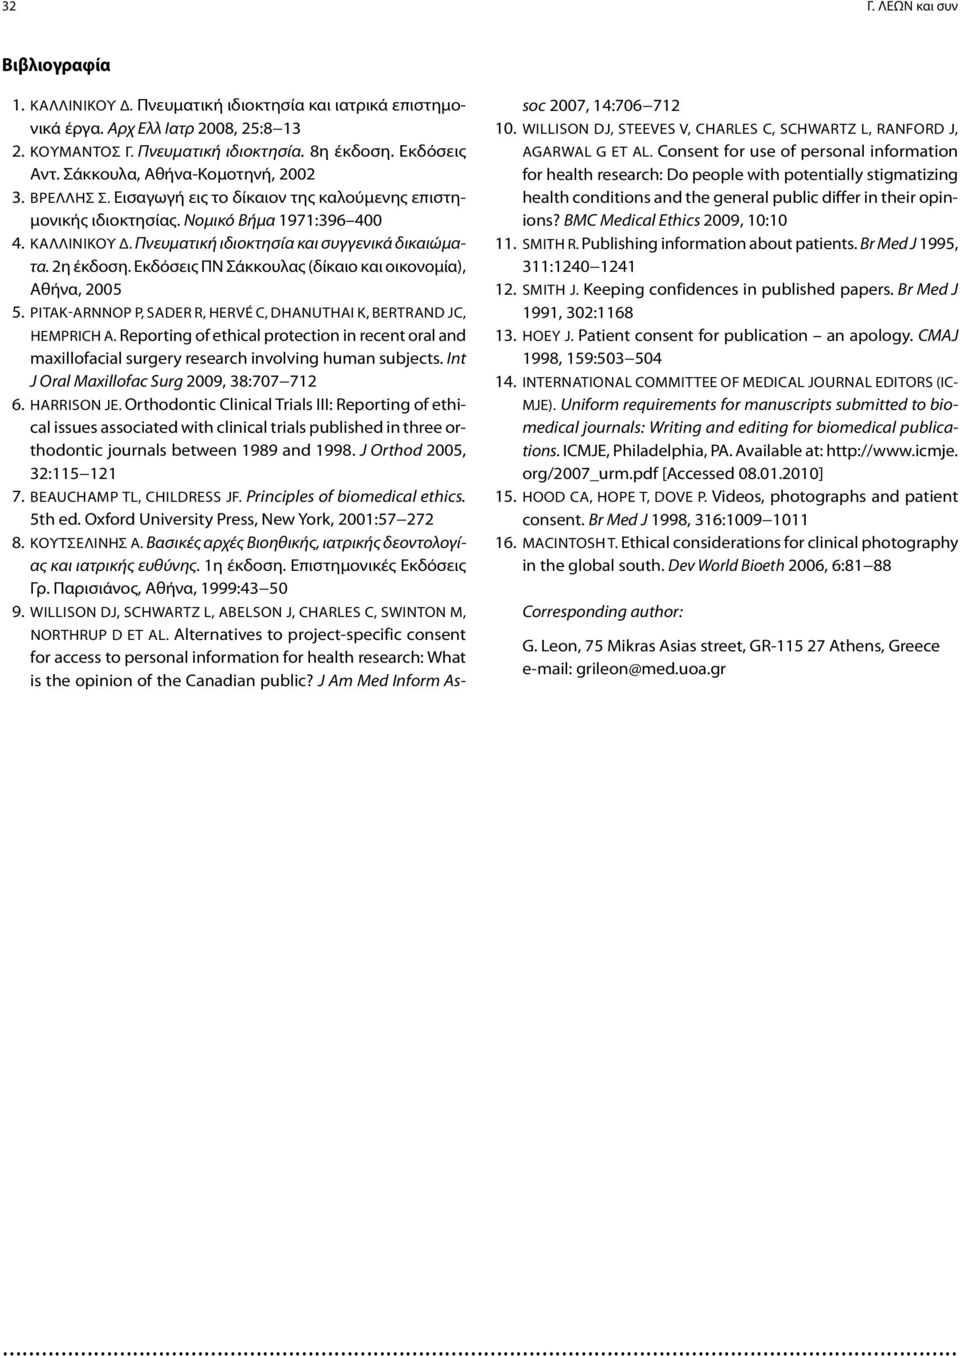 2η έκδοση. Εκδόσεις ΠΝ Σάκκουλας (δίκαιο και οικονομία), Αθήνα, 2005 5. Pitak-Arnnop P, Sader R, Hervé C, Dhanuthai K, Bertrand JC, Hemprich A.